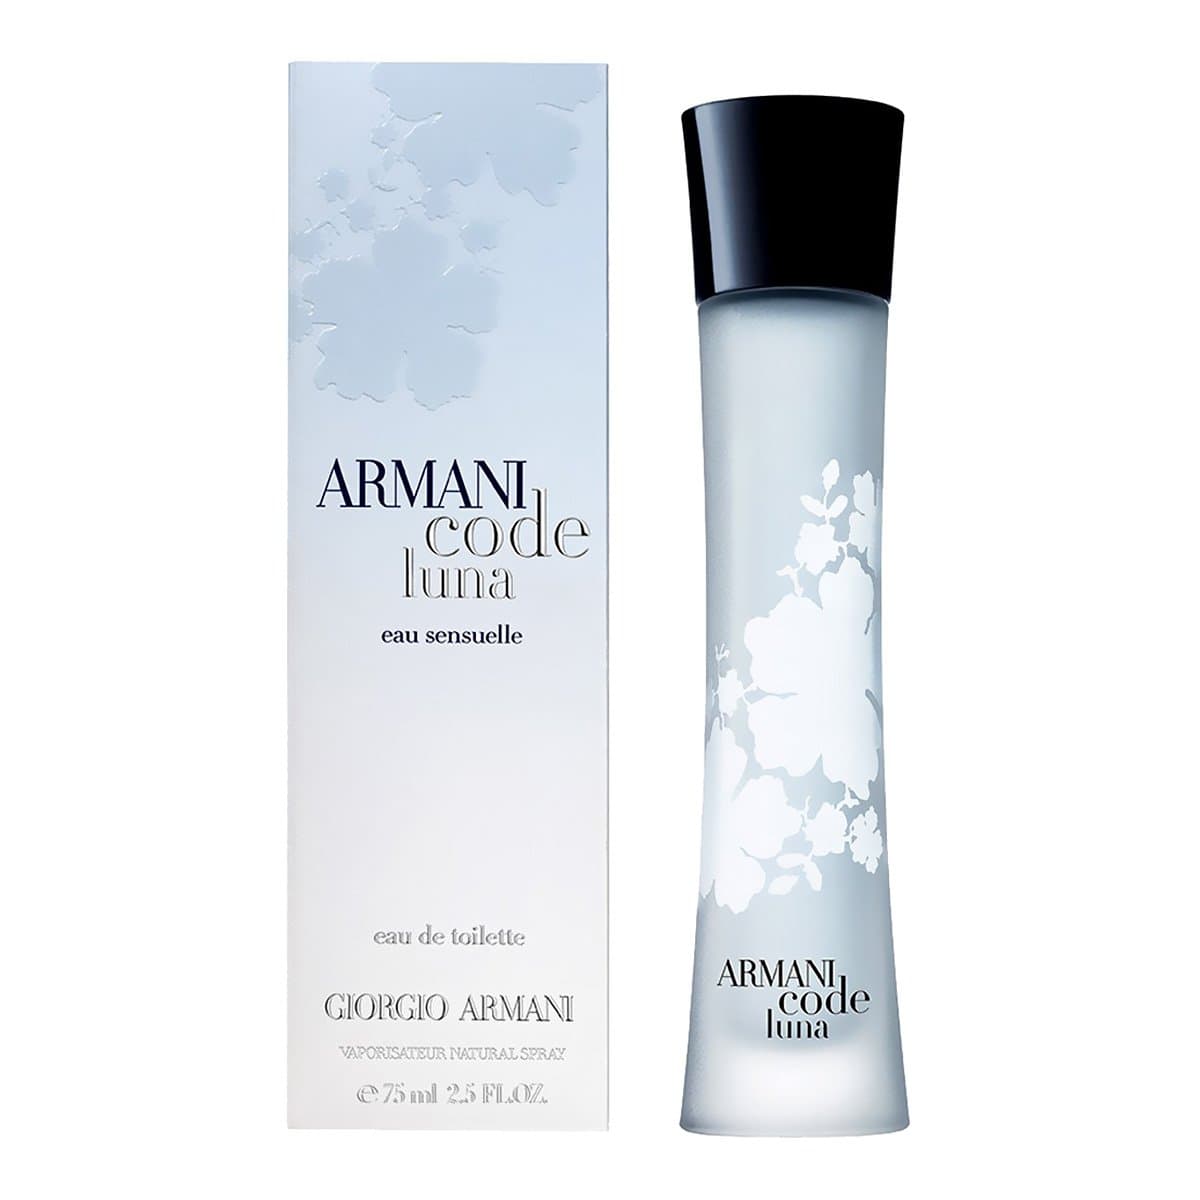 Armani woman. Giorgio Armani Armani code. Духи Armani code Luna. Armani code for women Giorgio Armani. Giorgio Armani Armani code туалетная вода.